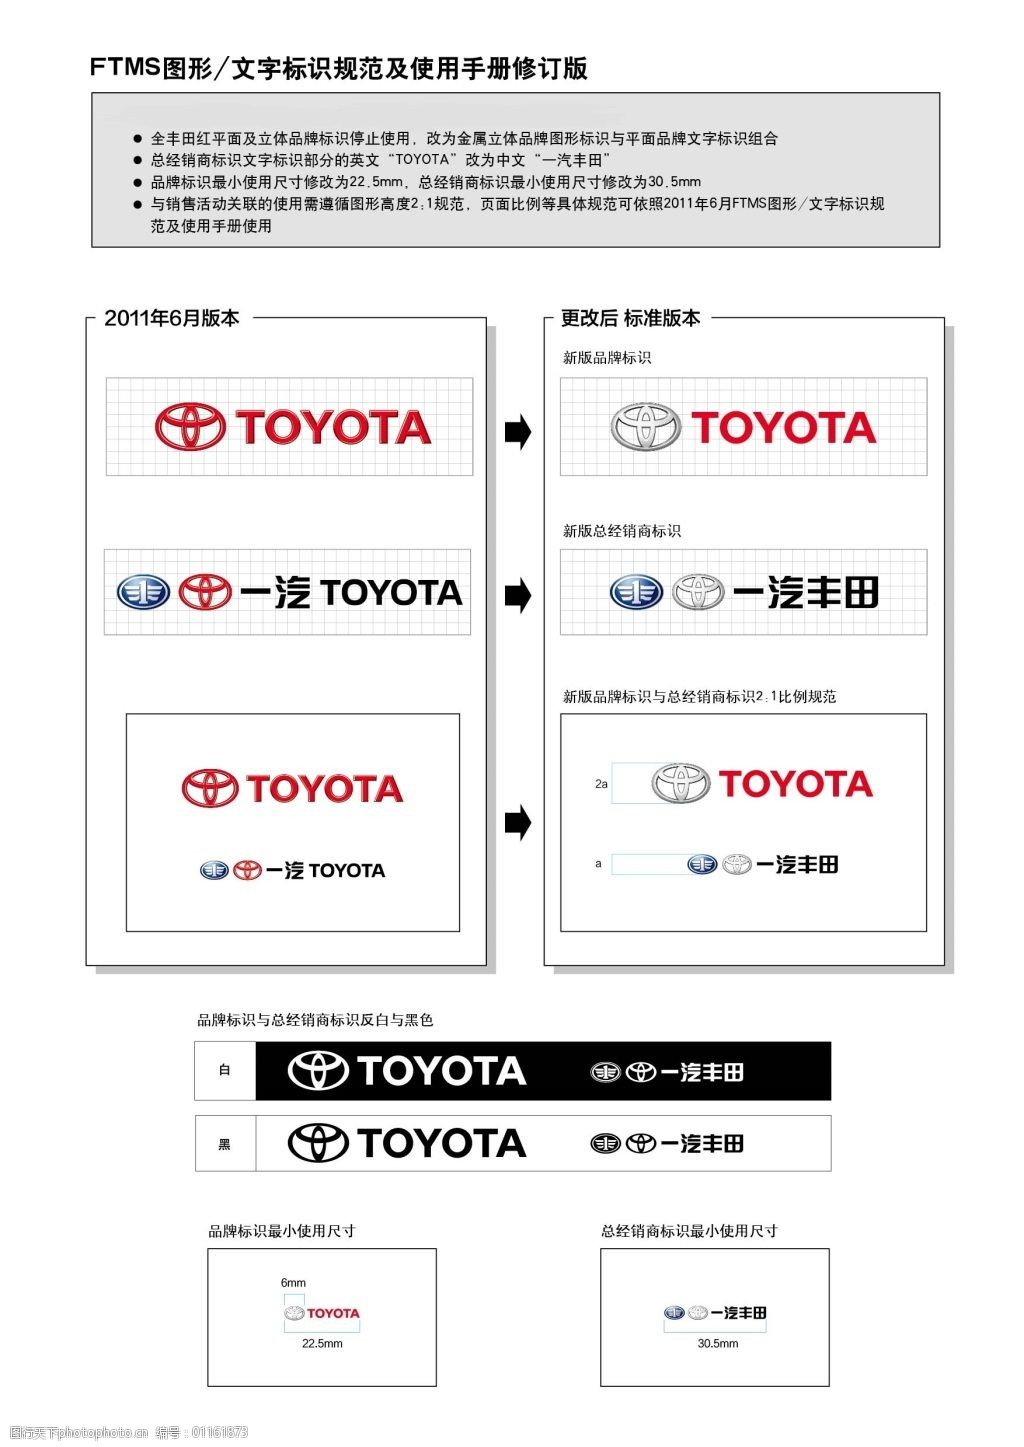 广汽丰田启用全新标识 增加广汽LOGO-行业资讯-大型吸塑车标制作-电镀金属车标-立体三维车标